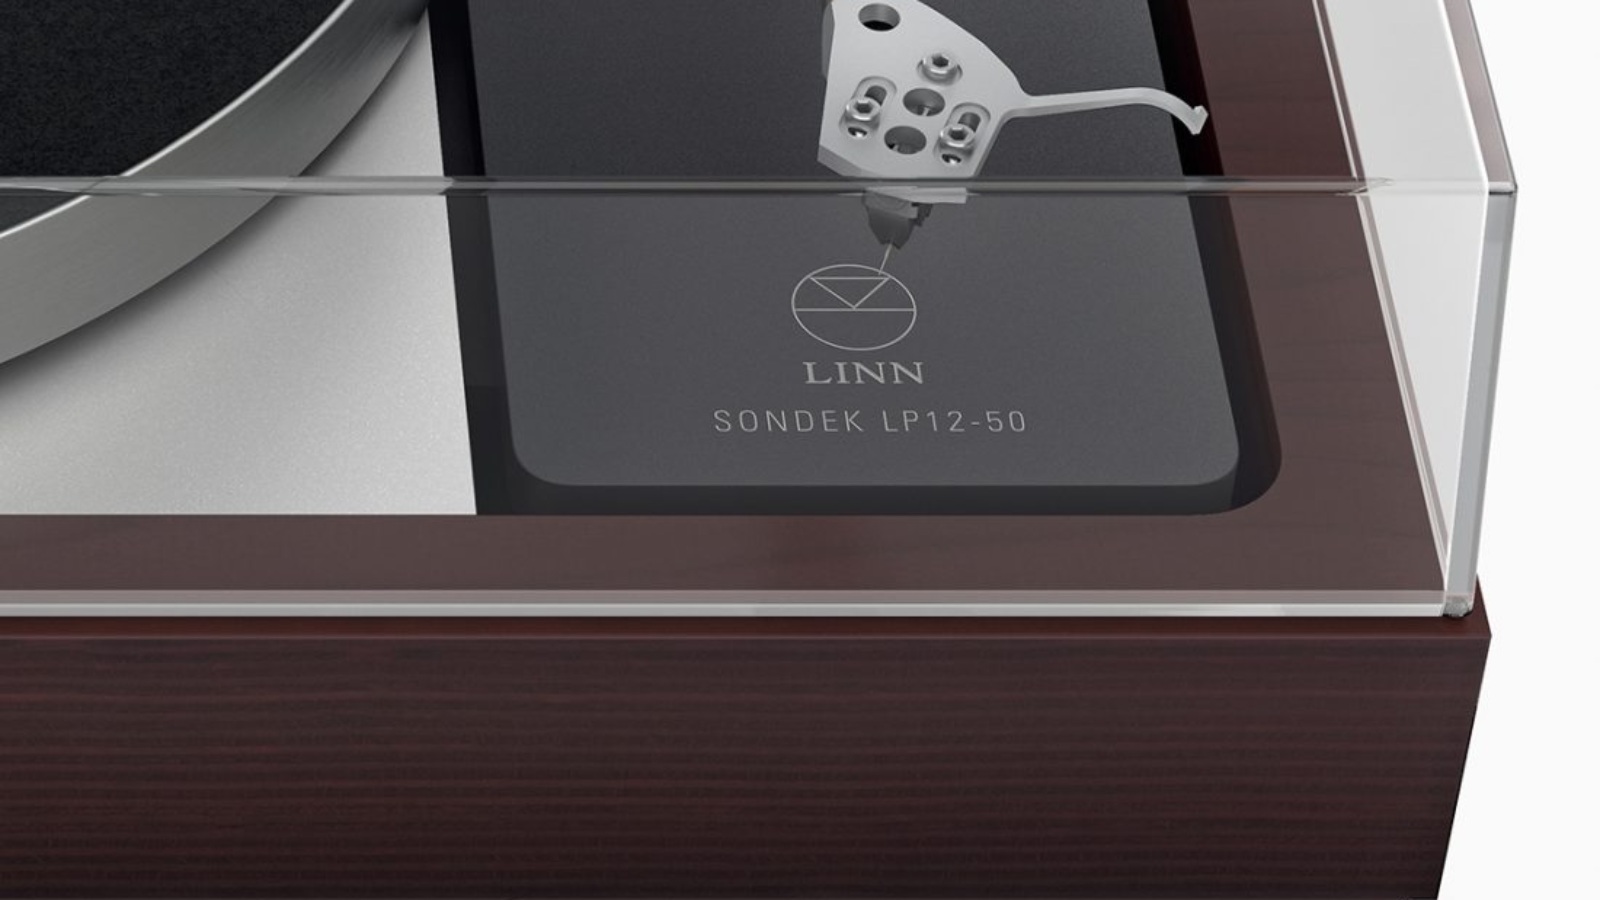 Con esta edición limitada, el tocadiscos Sondek-LP12 de Linn celebra sus 50 años